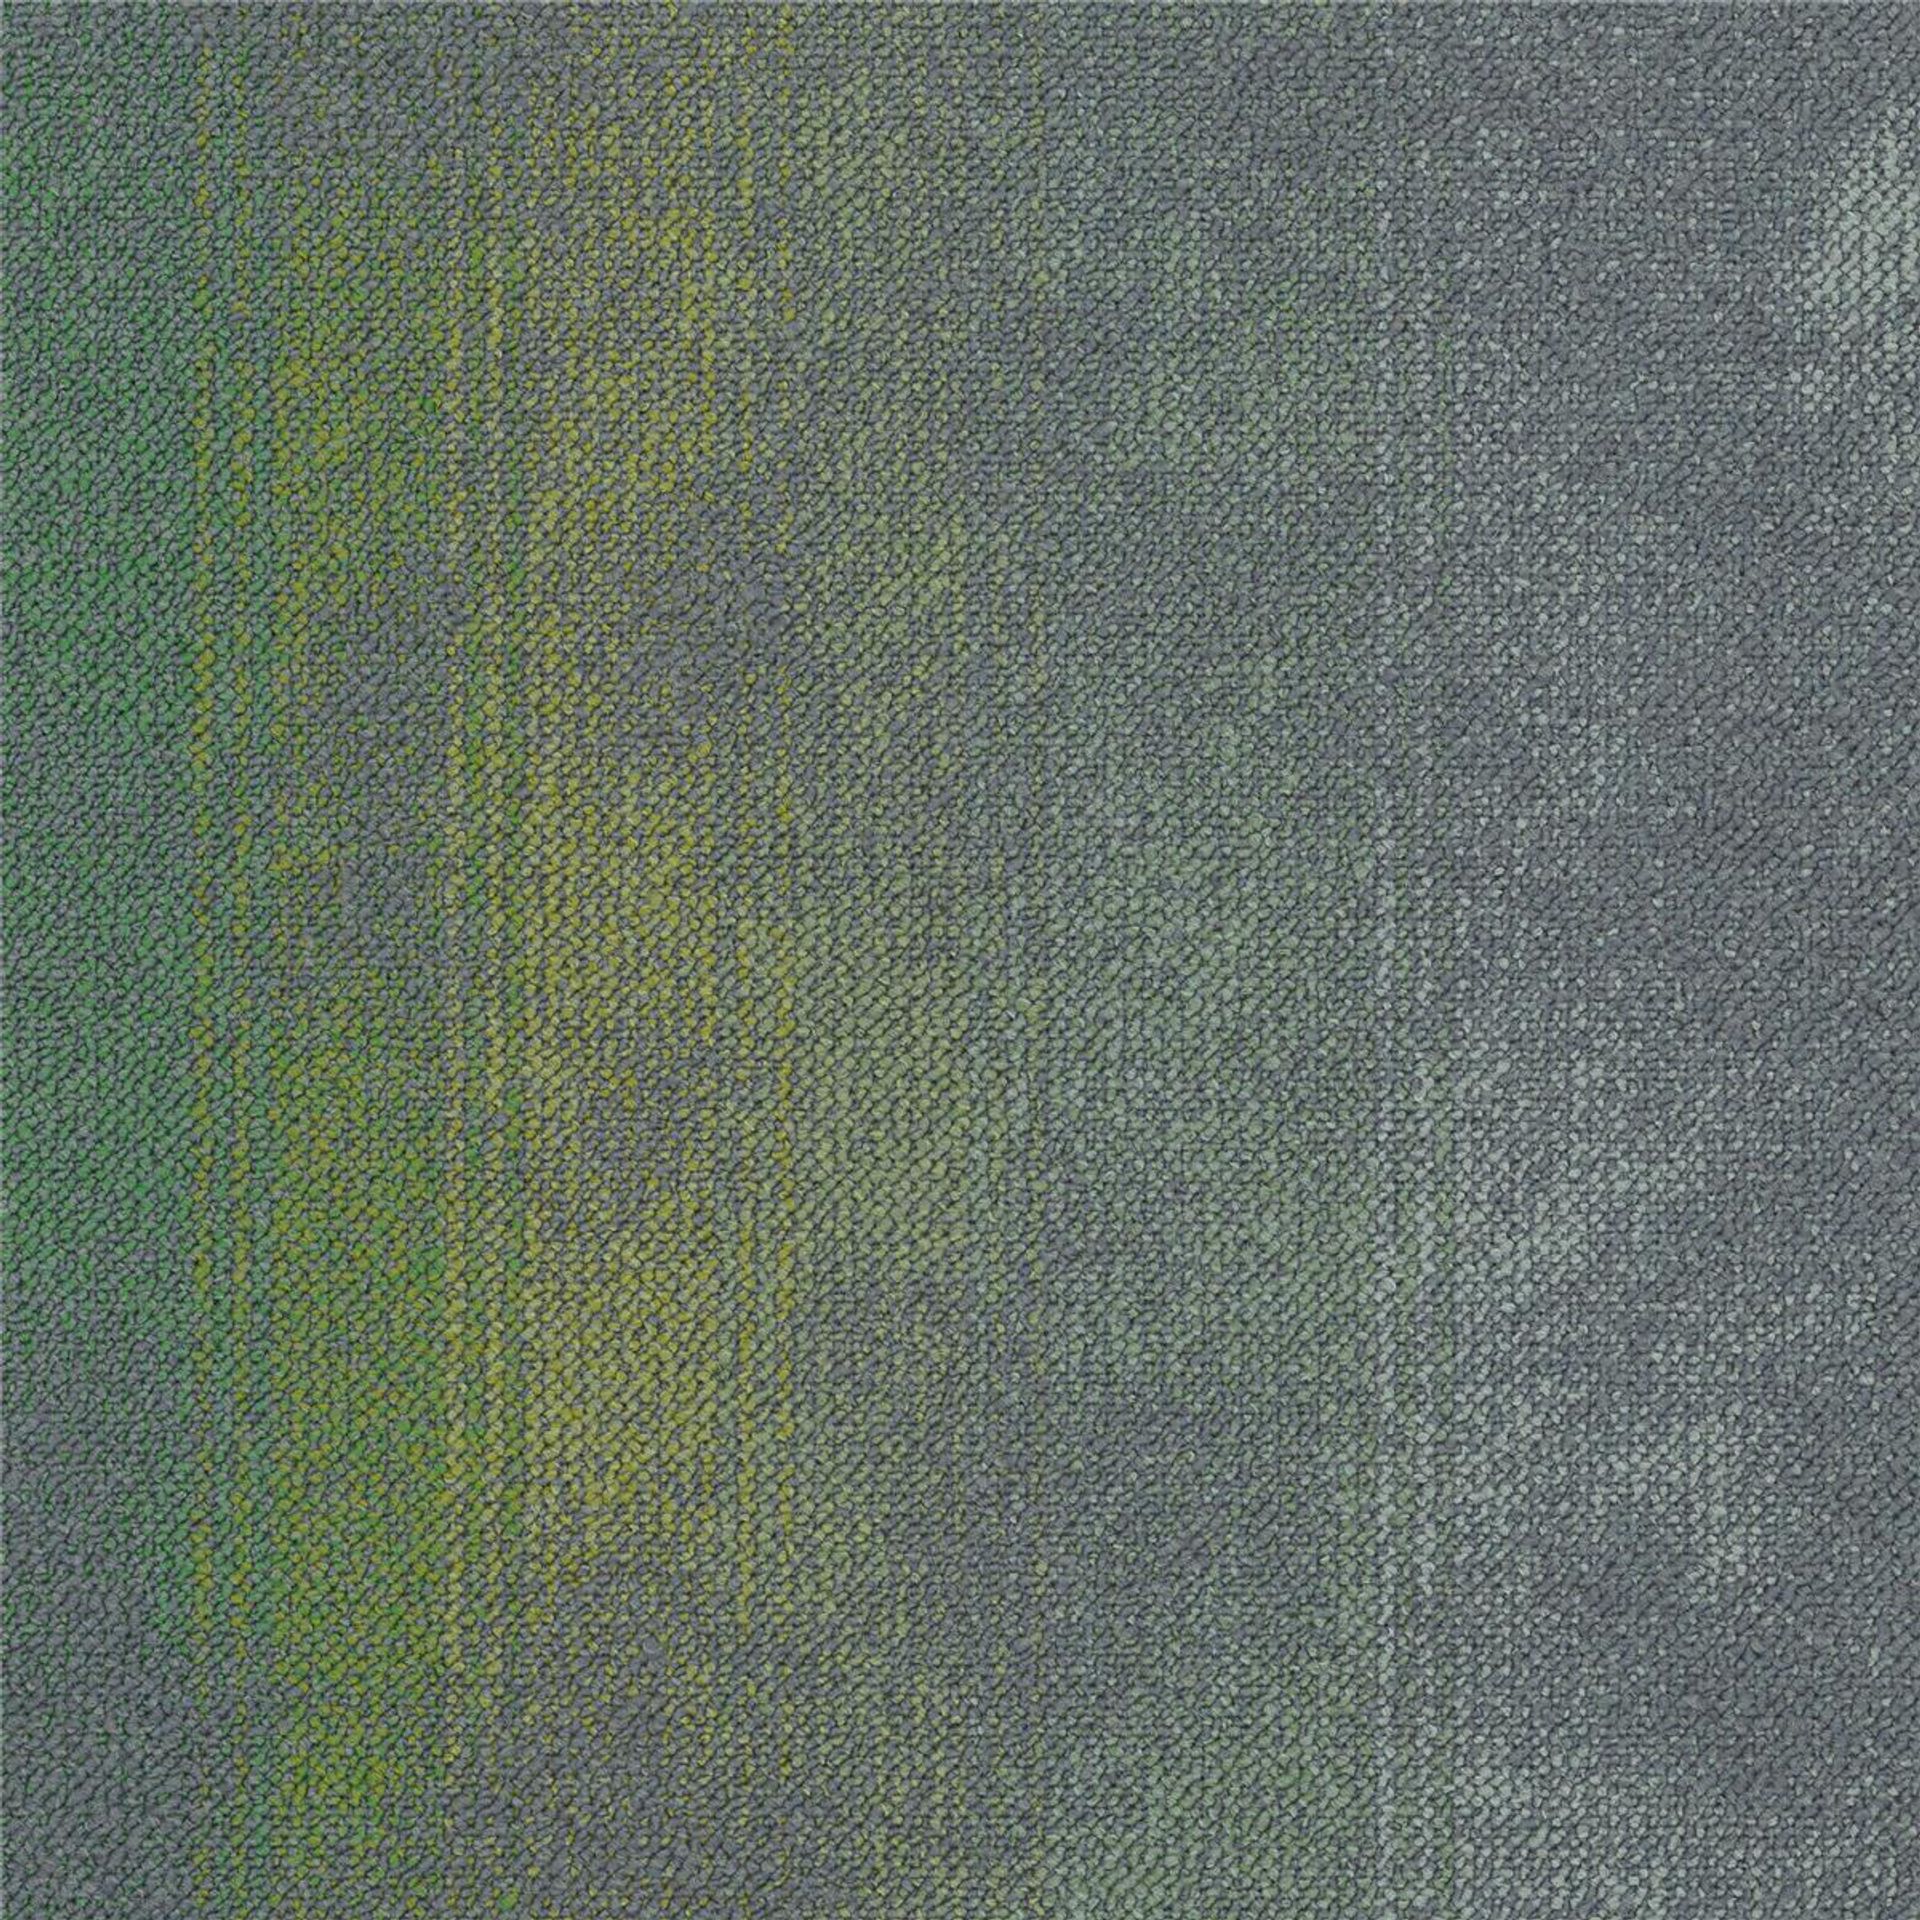 Teppichfliesen 50 x 50 cm Schlinge strukturiert Sere Colour AB94 7373-V B8 Grün Organisch